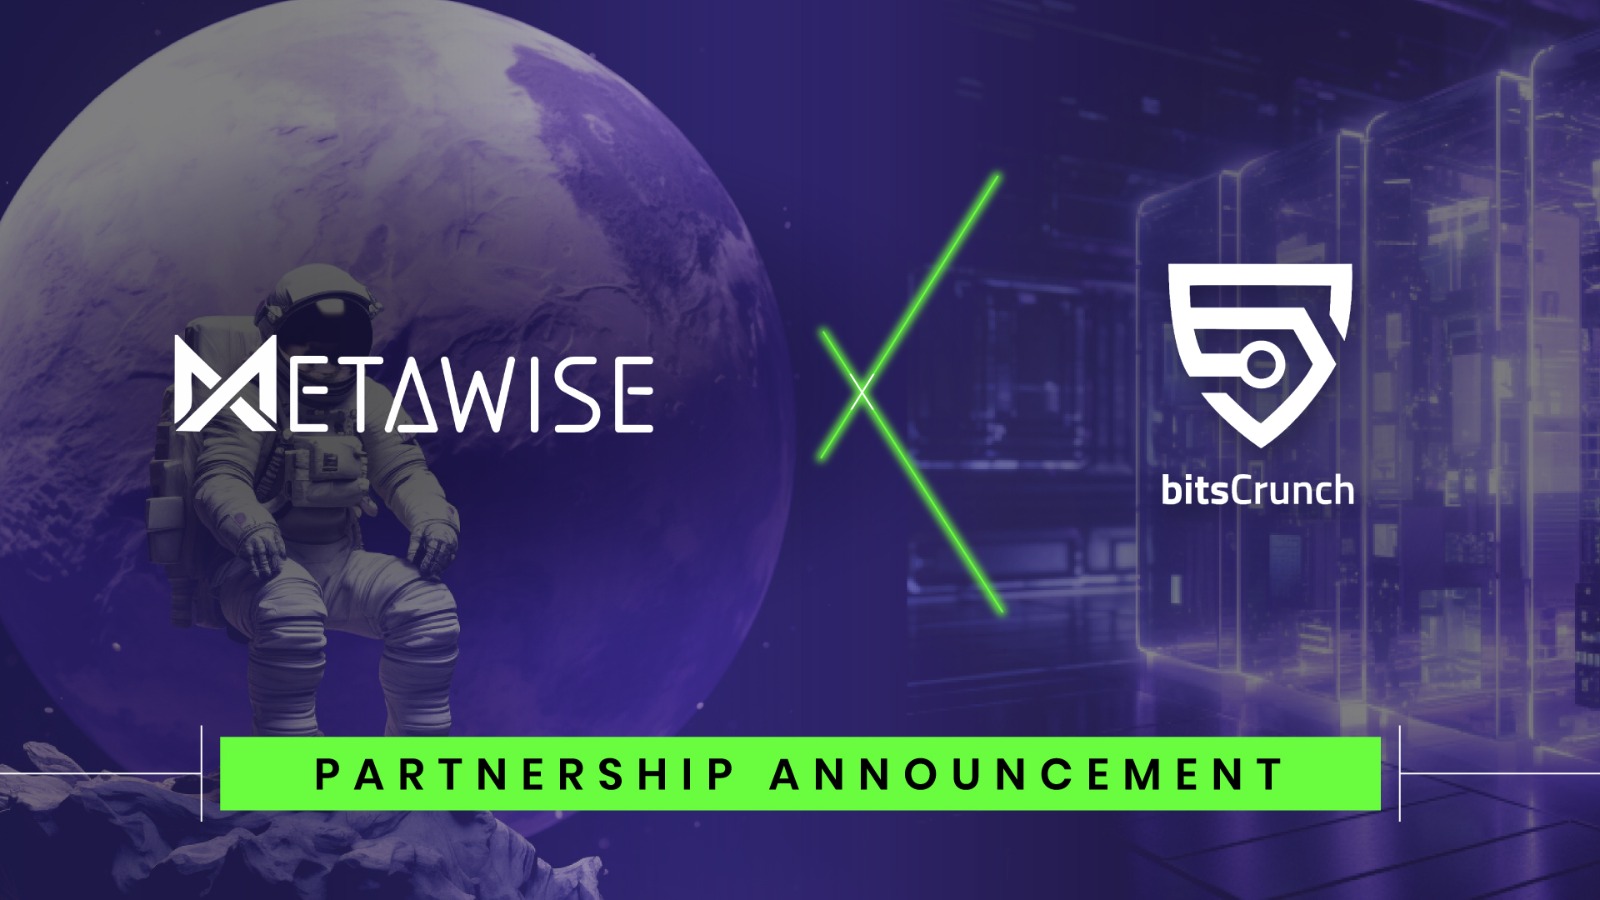 MetaWise Partnership with BitsCrunch